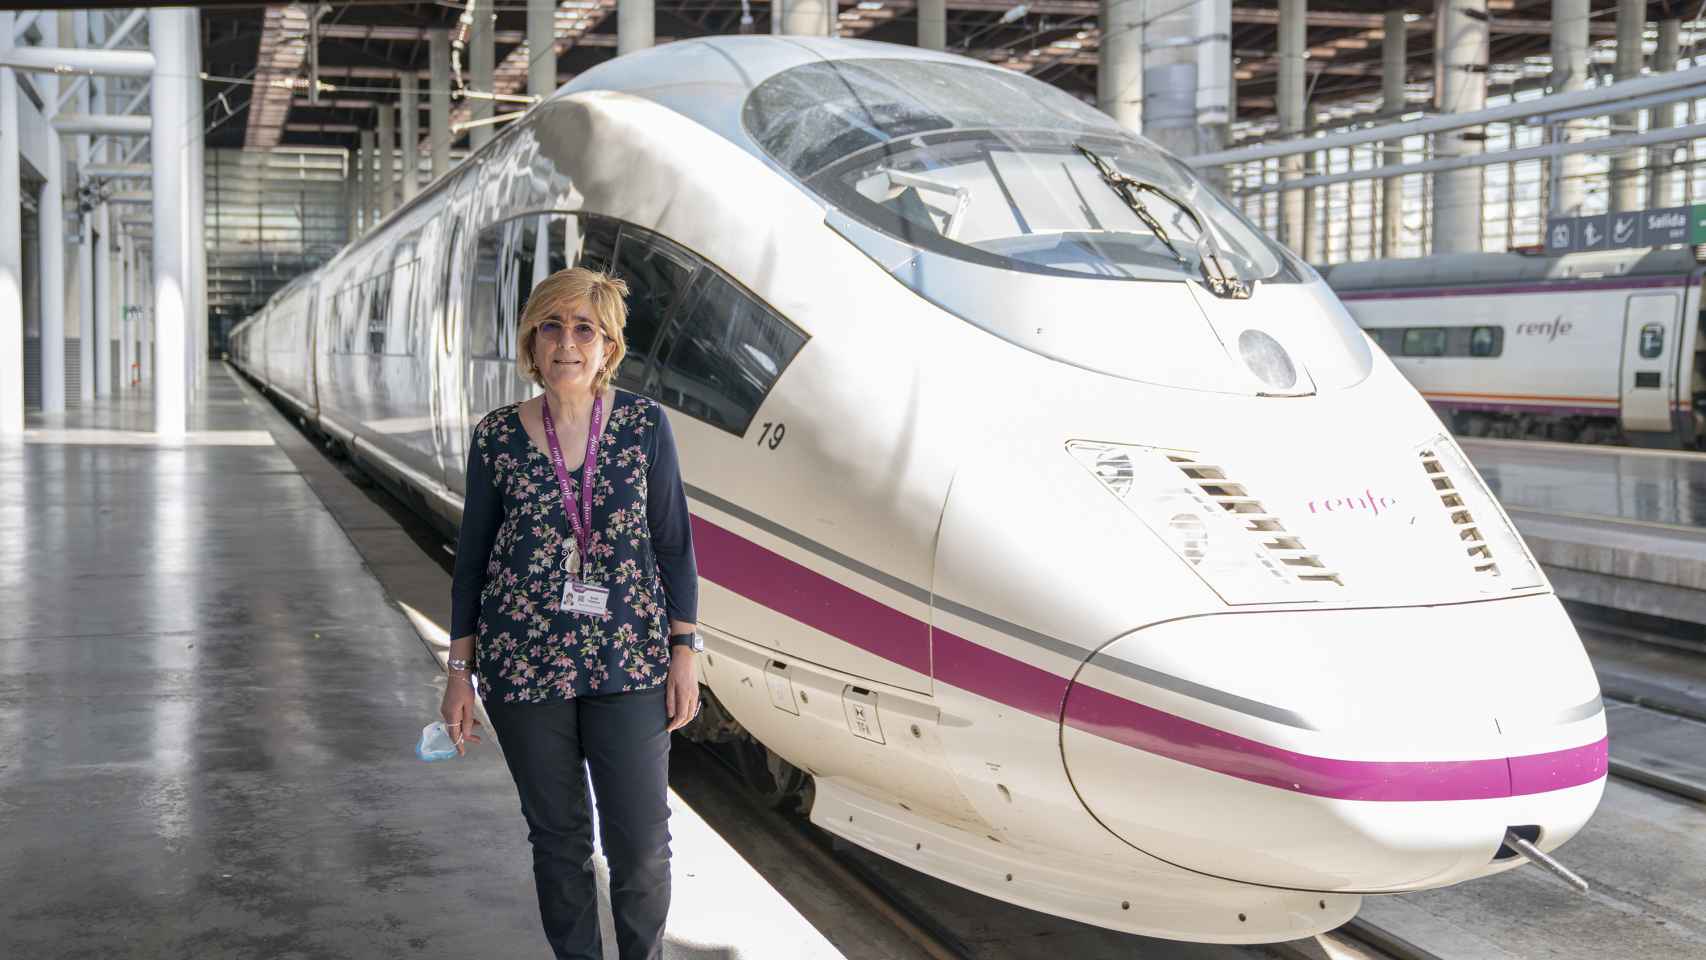 Teresa Rey frente al modelo de tren que tiene el récord de velocidad en España.